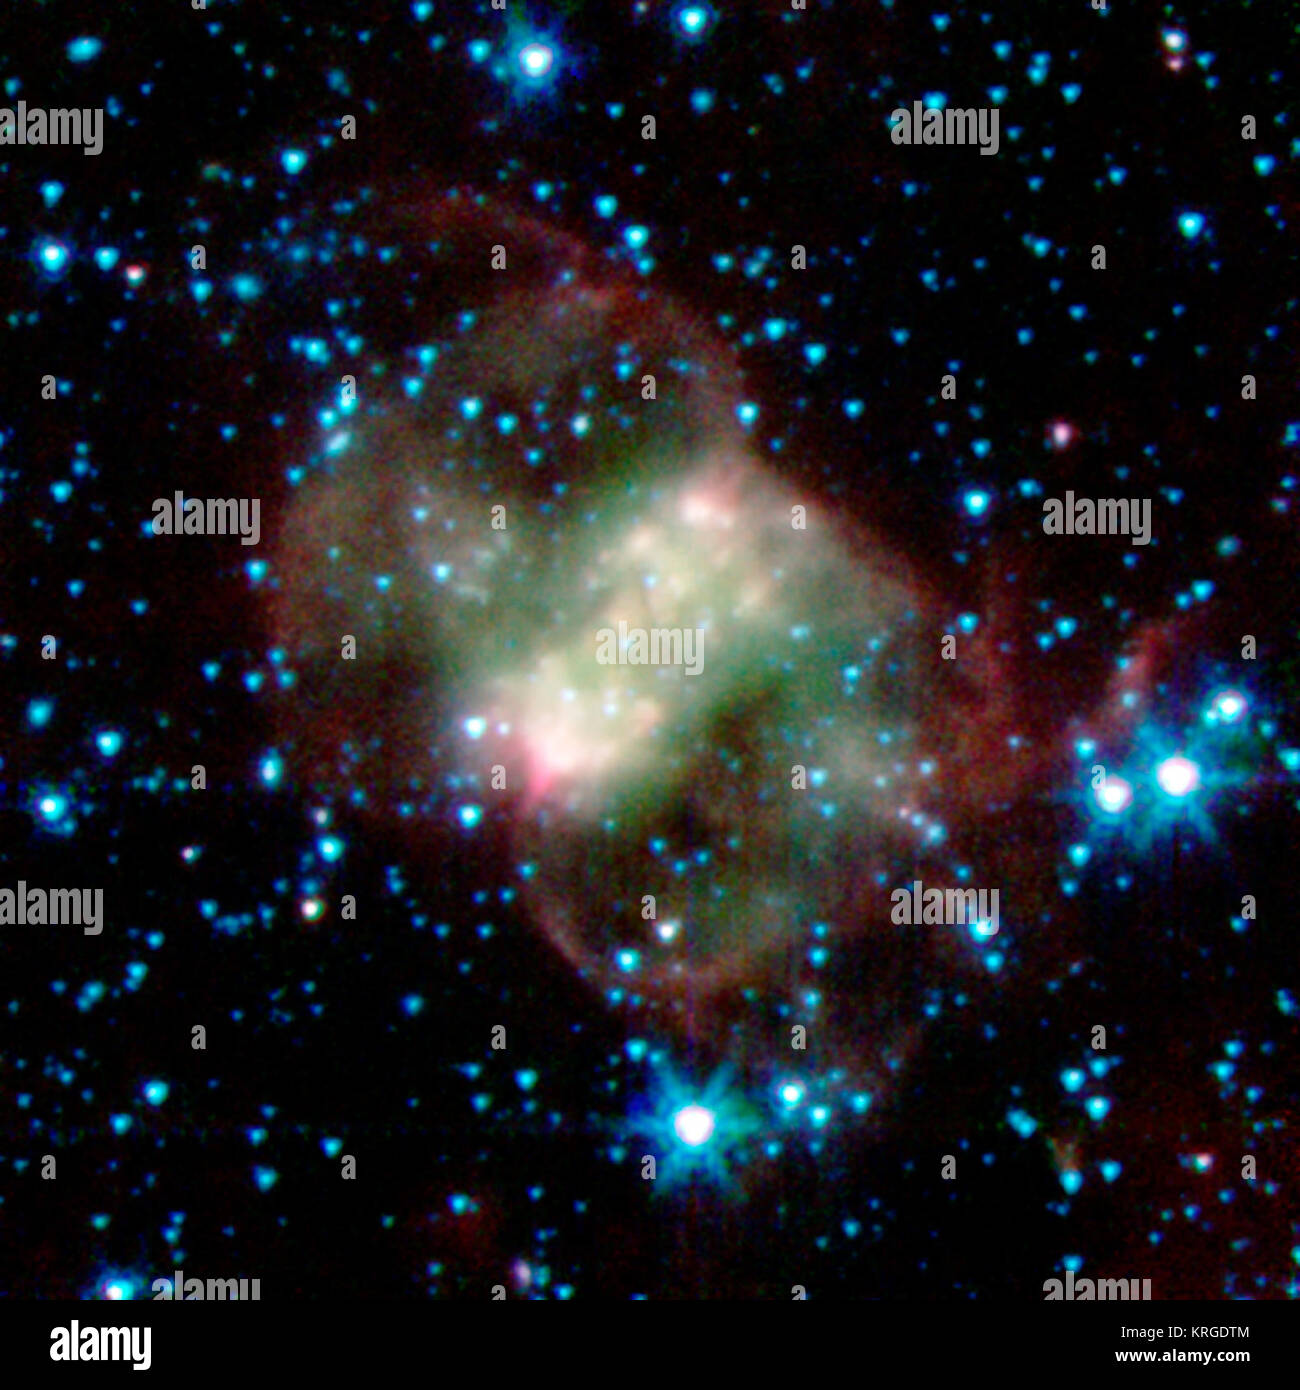 Dieser planetarische Nebel, NGC 650 oder das Kleine Hantel bekannt ist, ist rund 2.500 Lichtjahre von der Erde entfernt im Sternbild Perseus. Im Gegensatz zu den anderen sphärischen Nebel, es hat eine bipolare oder Schmetterling Form durch eine "Taille", oder der Festplatte aus dickem Material, läuft von Unten nach Oben von rechts nach links. Schnelle Winde Material vom Stern, oberhalb und unterhalb der staubigen Festplatte. Die gruseligen Grüne und rote Wolken sind von glühende Wasserstoff Moleküle, mit dem grünen Bereich wird heißer als die roten. In diesem Bild, Infrarot Licht im Wellenlängenbereich von 3,6 μm ist in blau, 4,5 Mikron in Grün und 8,0 mi Stockfoto